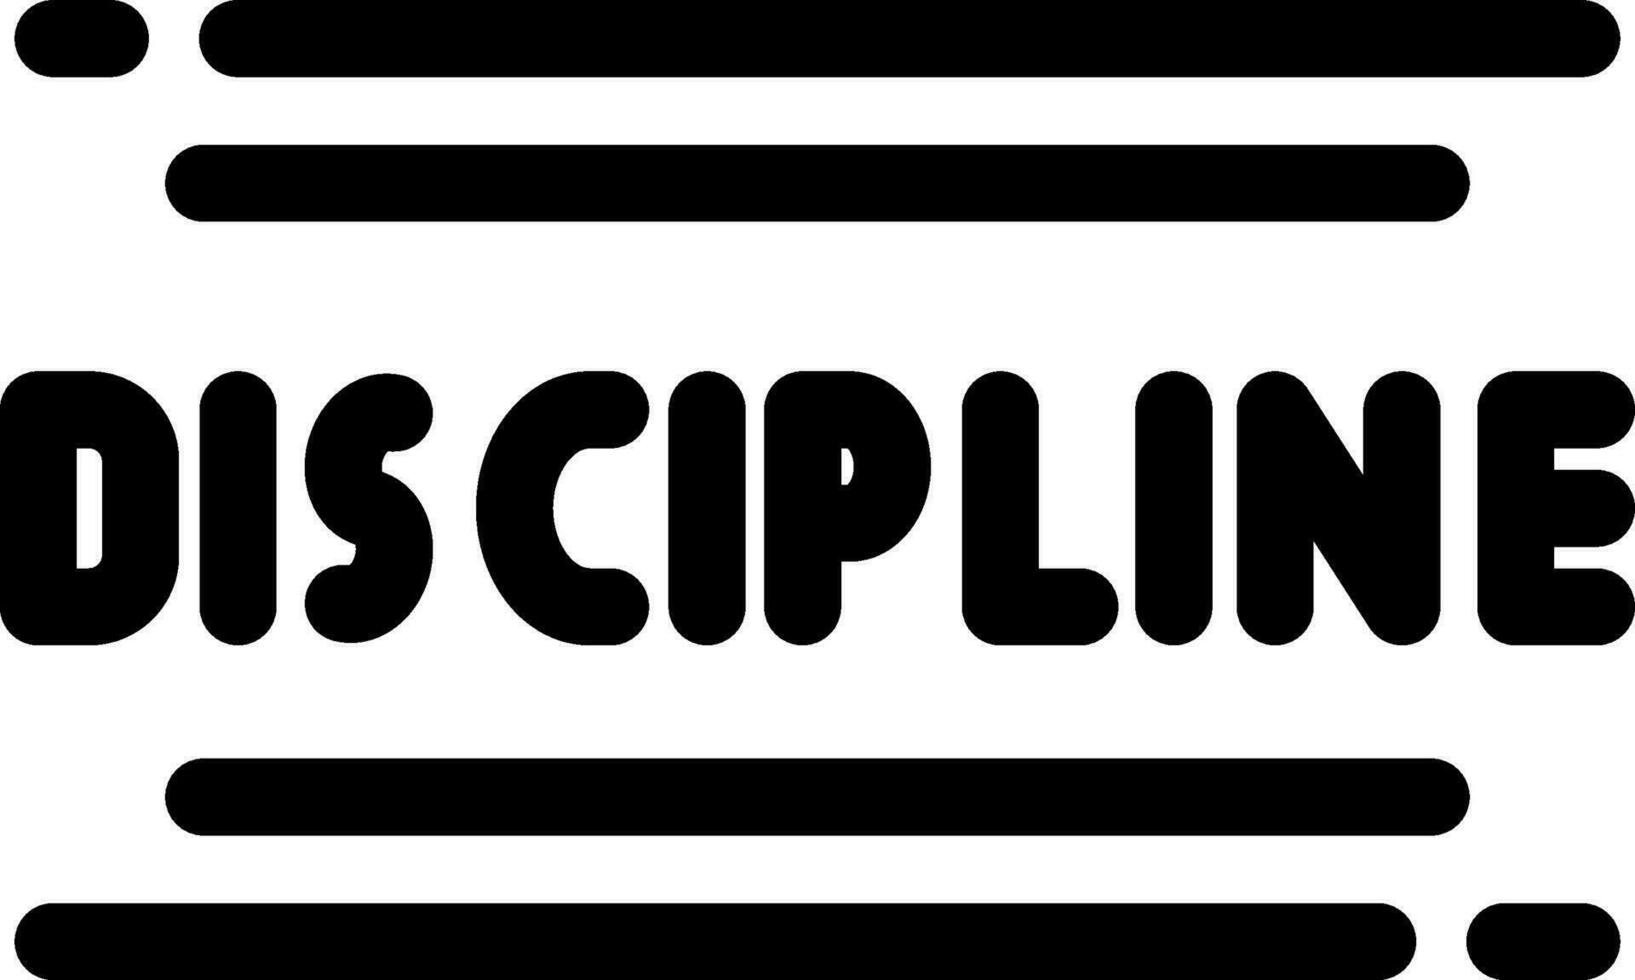 disciplina creativo icono diseño vector